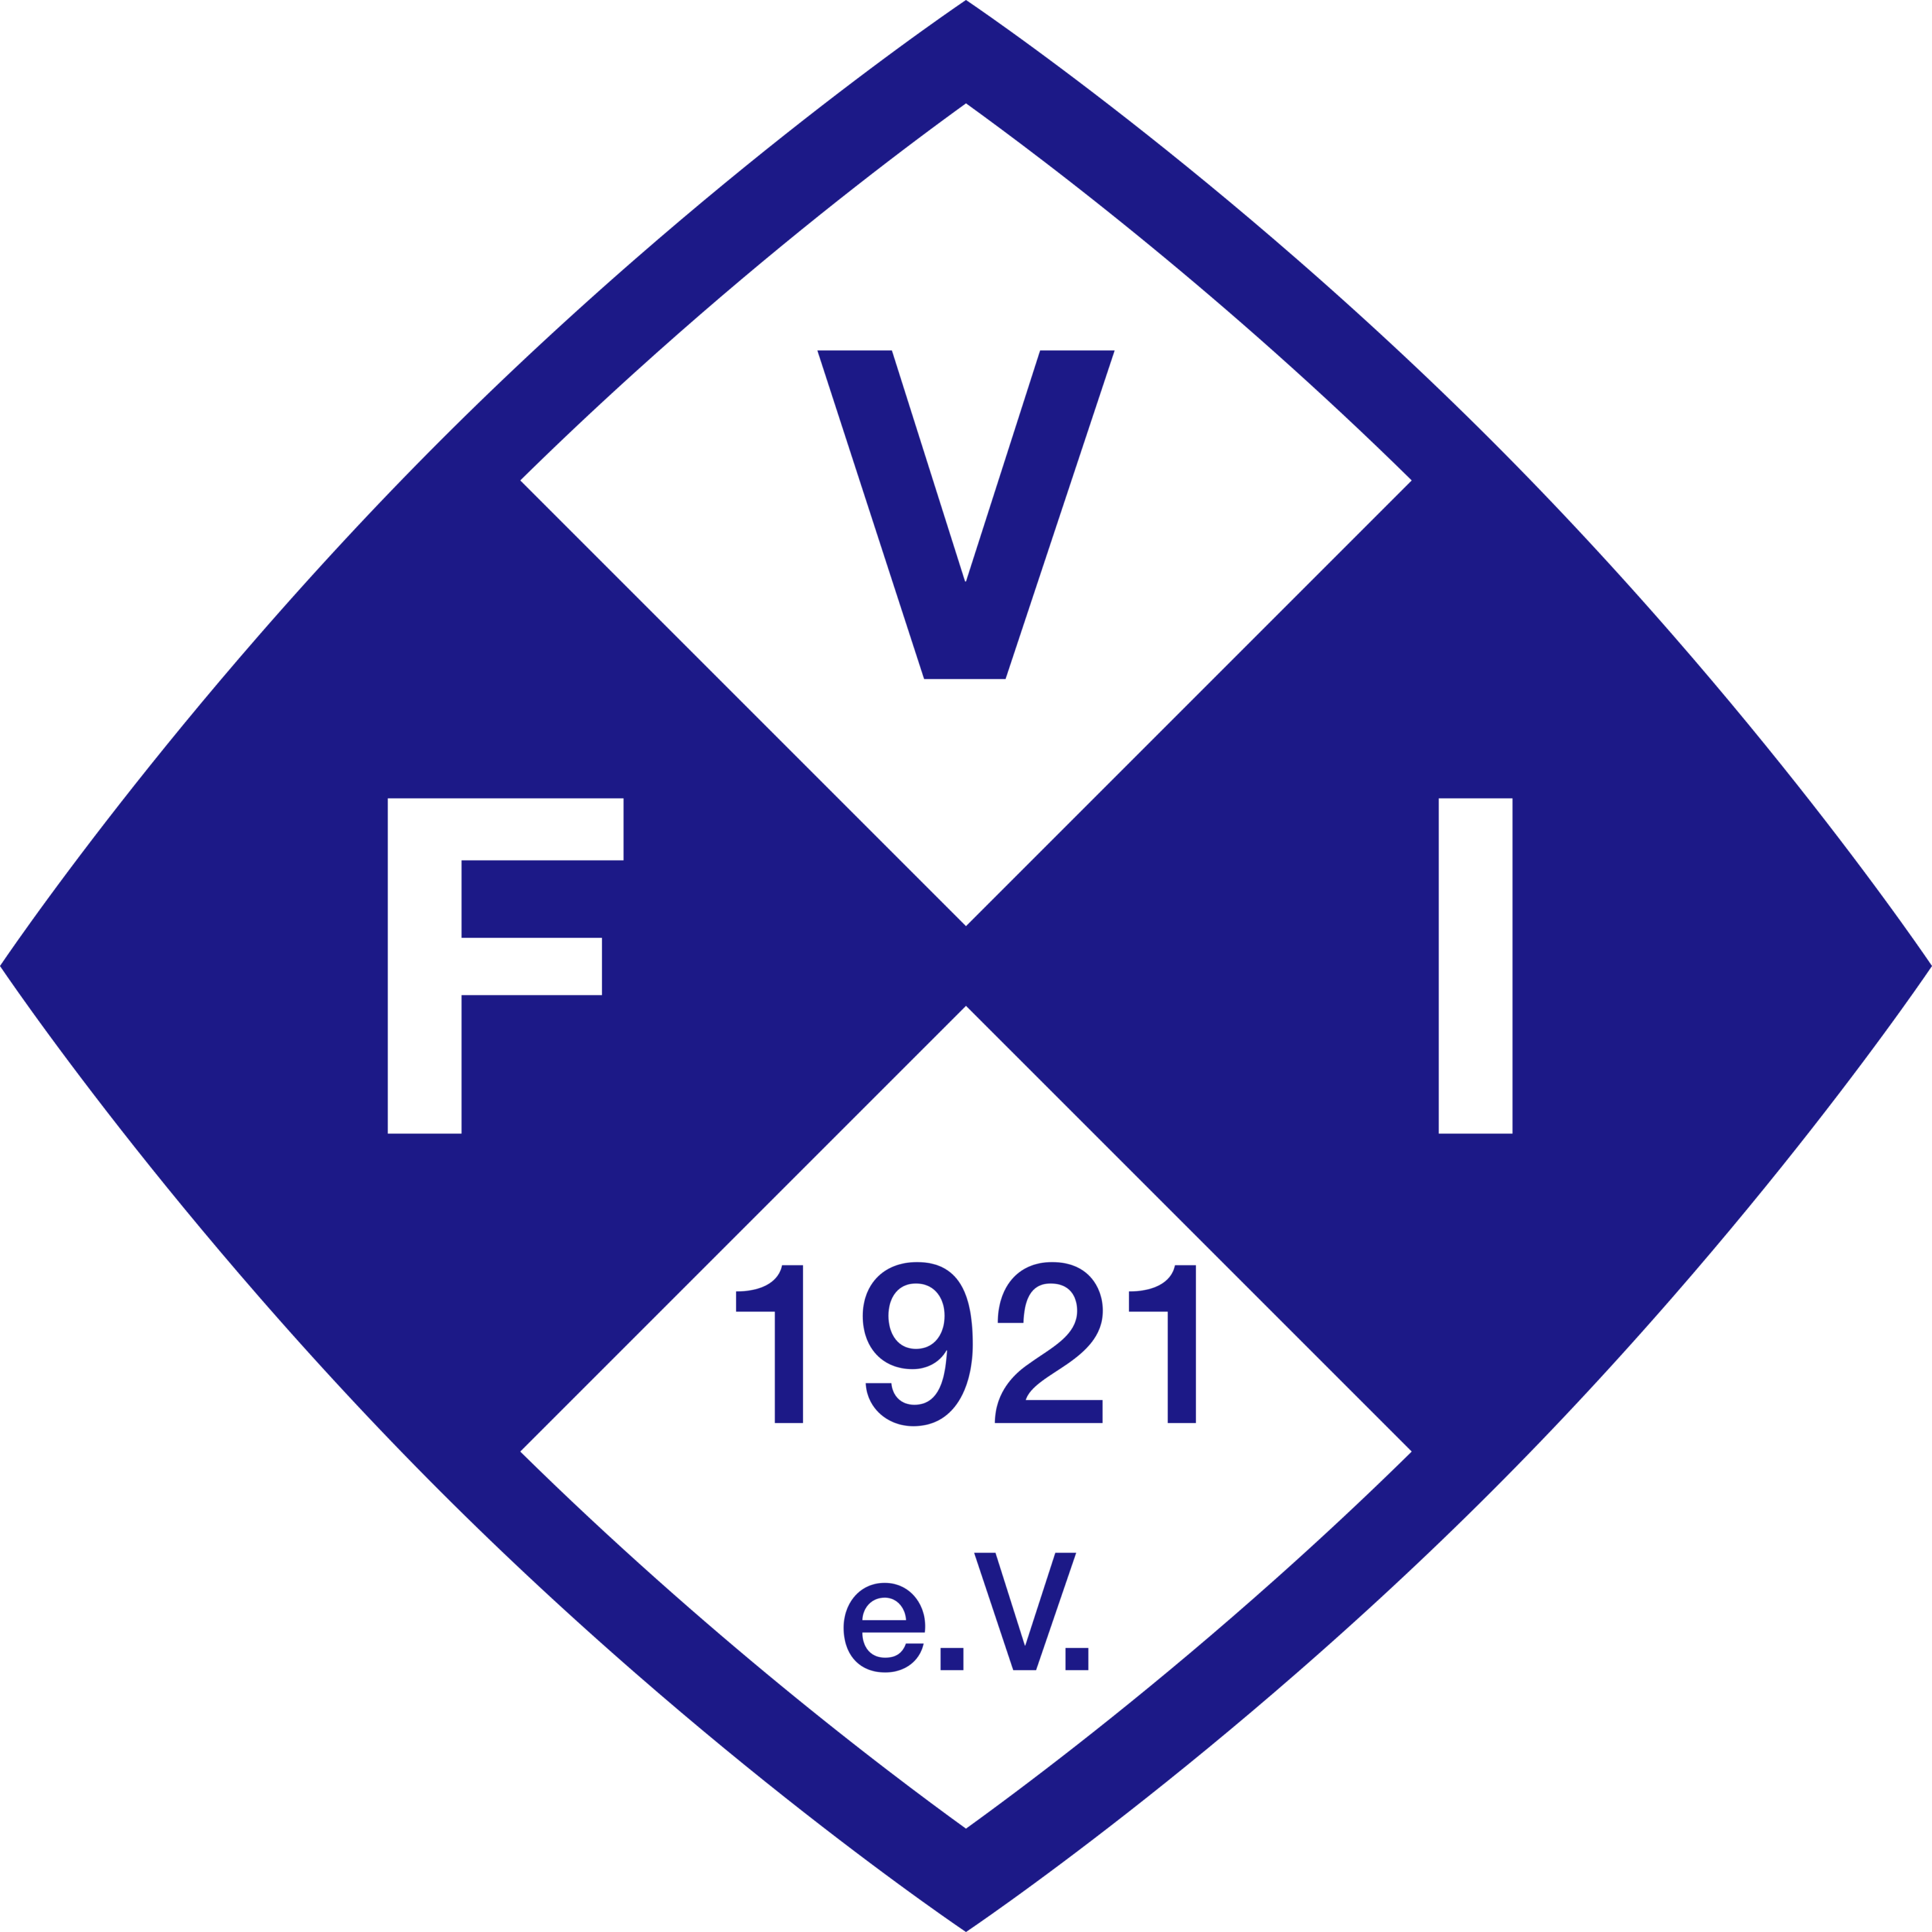 FV Illertissen Logo